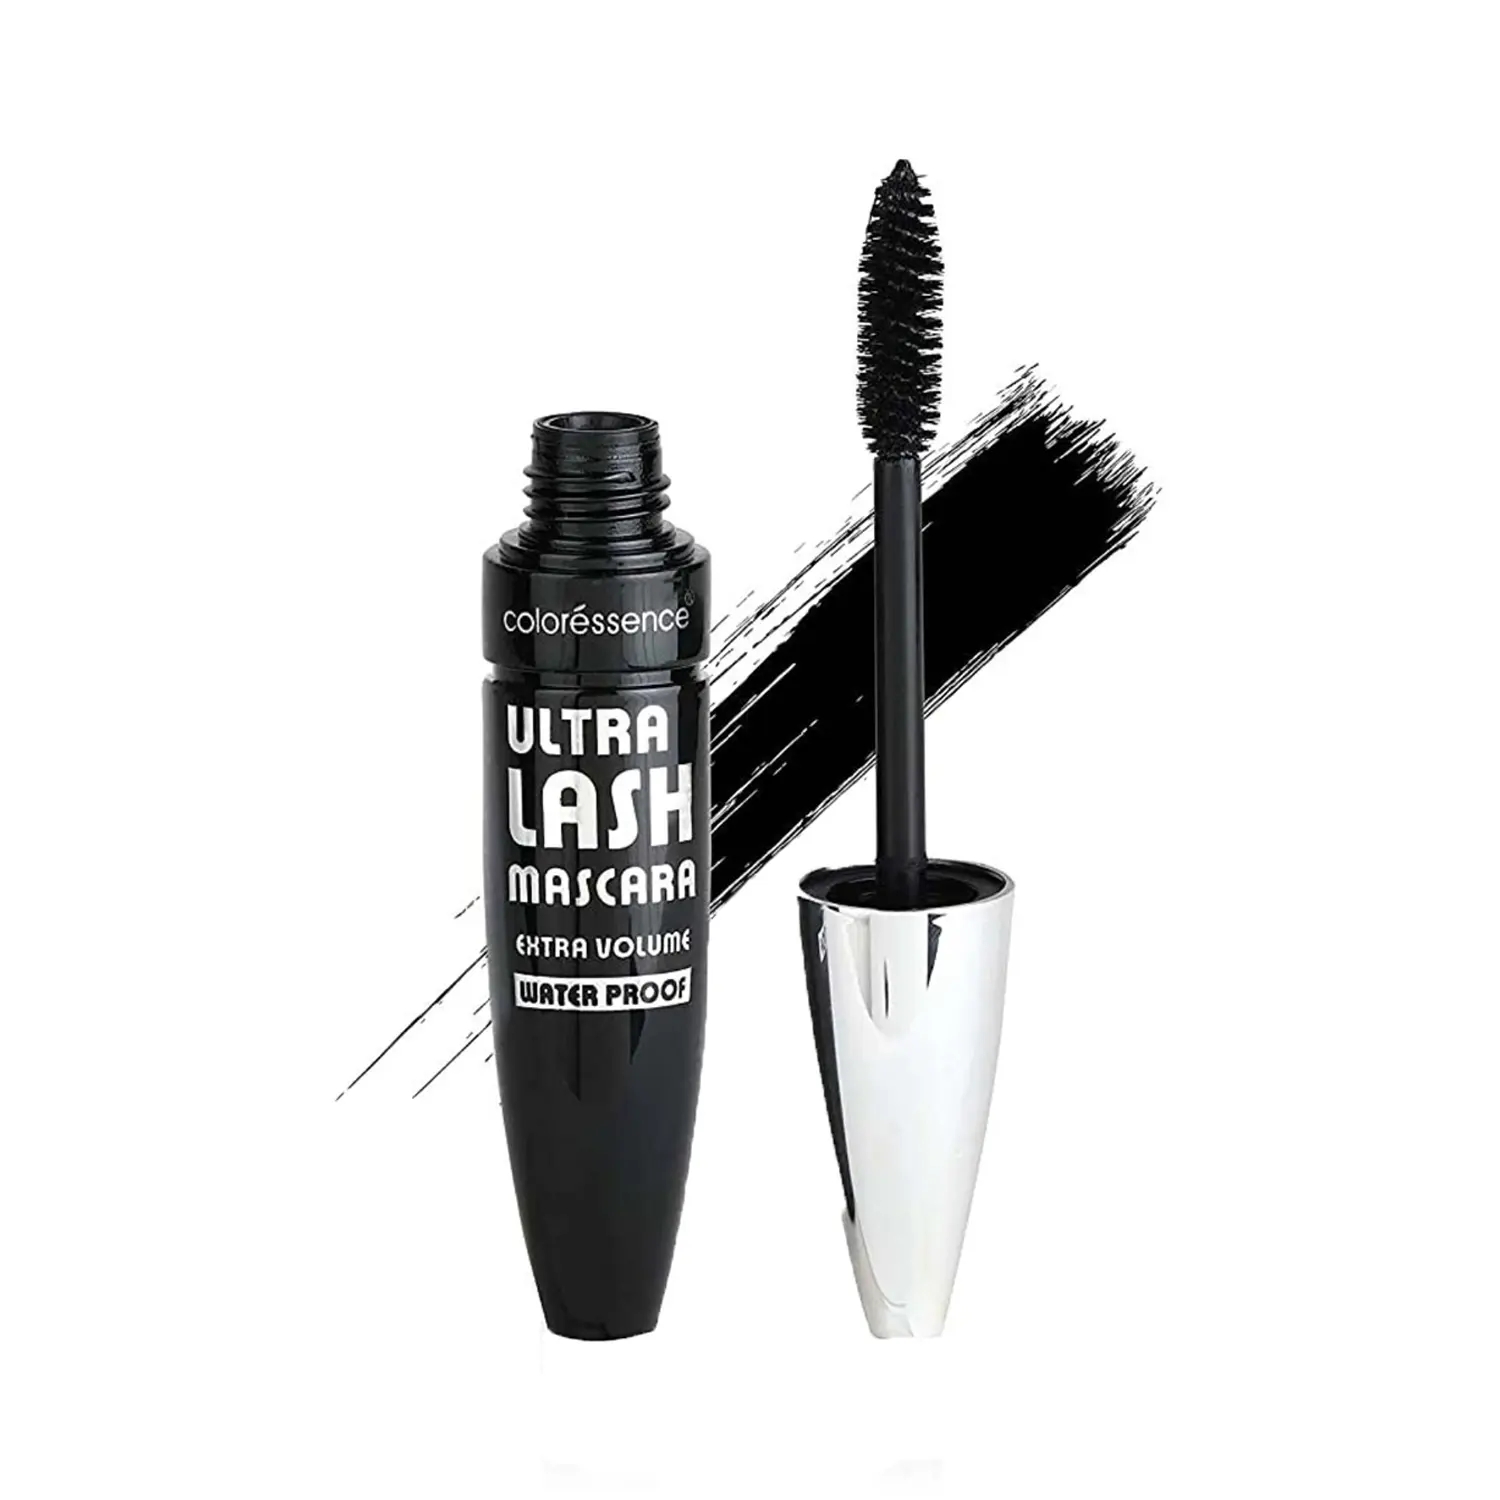 Coloressence | Coloressence Ultra Lash Extra Volume Lush Intense Formula Mascara With Free Face Eyelashes - Black (15ml)